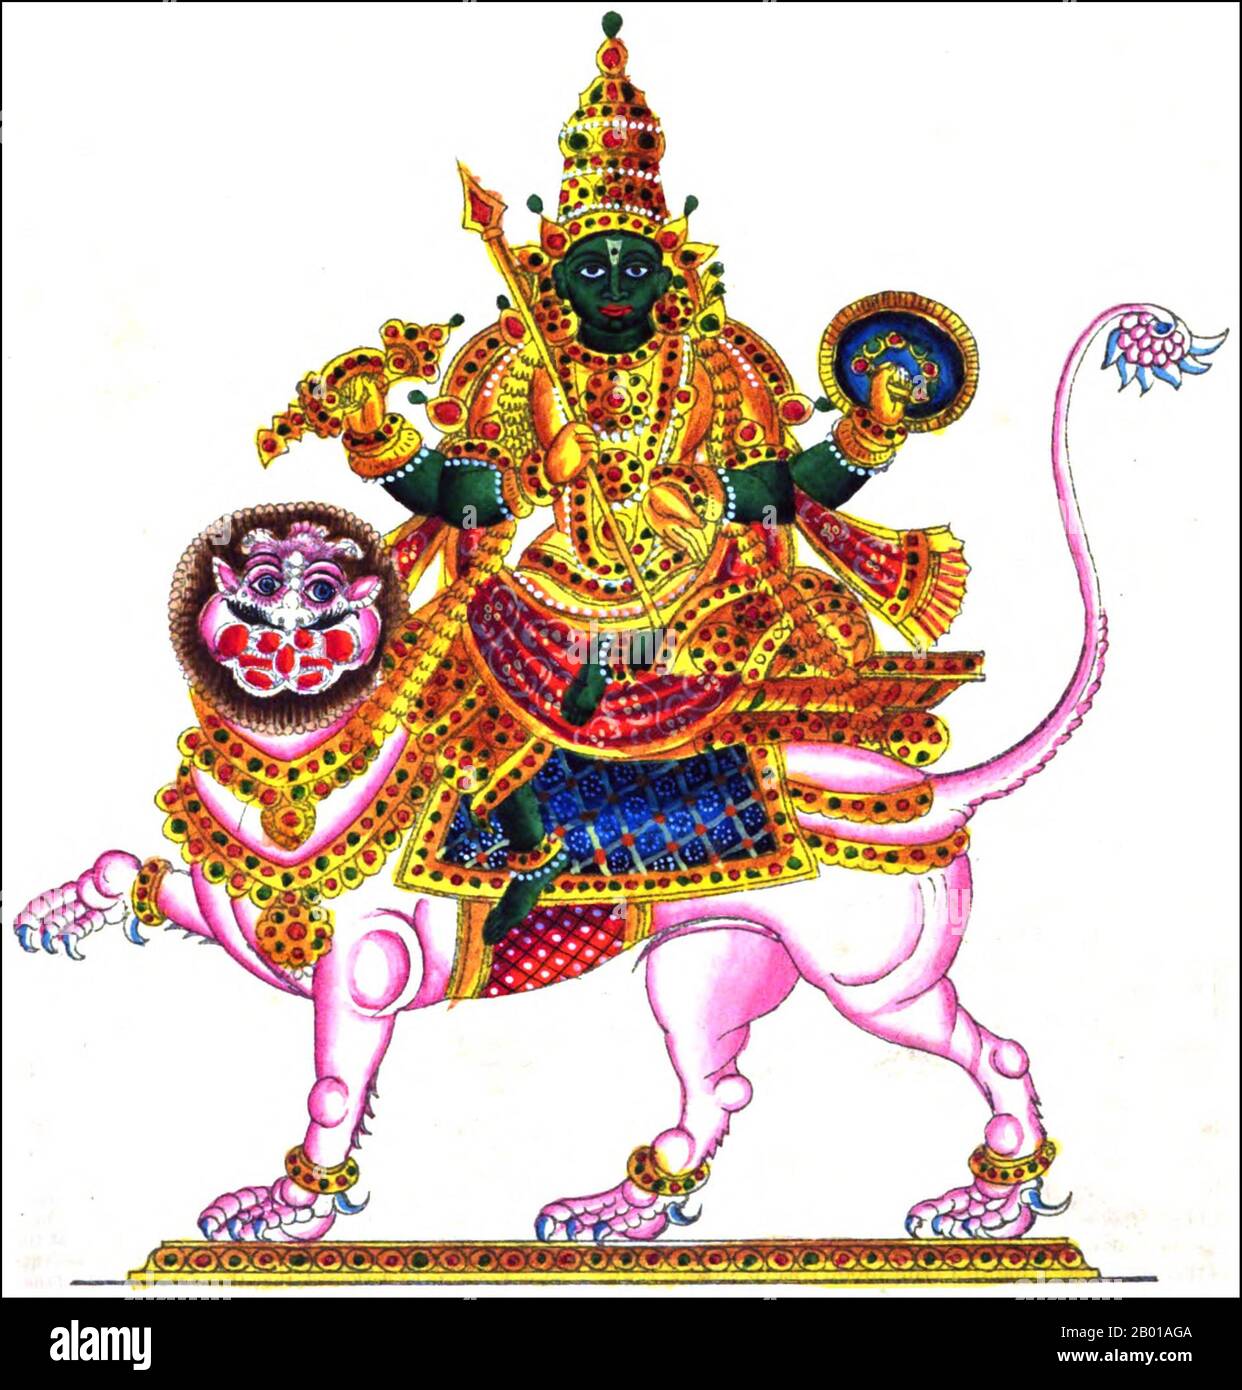 India: Una rappresentazione indiana di Rahu, Snake Demon e cavatore di eclissi solari e lunari, 1842. Nella mitologia indù, Rahu è un serpente che inghiottisce il sole o la luna causando eclissi. È raffigurato nell'arte come un drago senza corpo che guida un carro disegnato da otto cavalli neri. Rahu è uno dei navagrahas (nove pianeti) in astrologia vedica. Il Rahu kala (ora del giorno sotto l'influenza di Rahu) è considerato inopportuno. Foto Stock